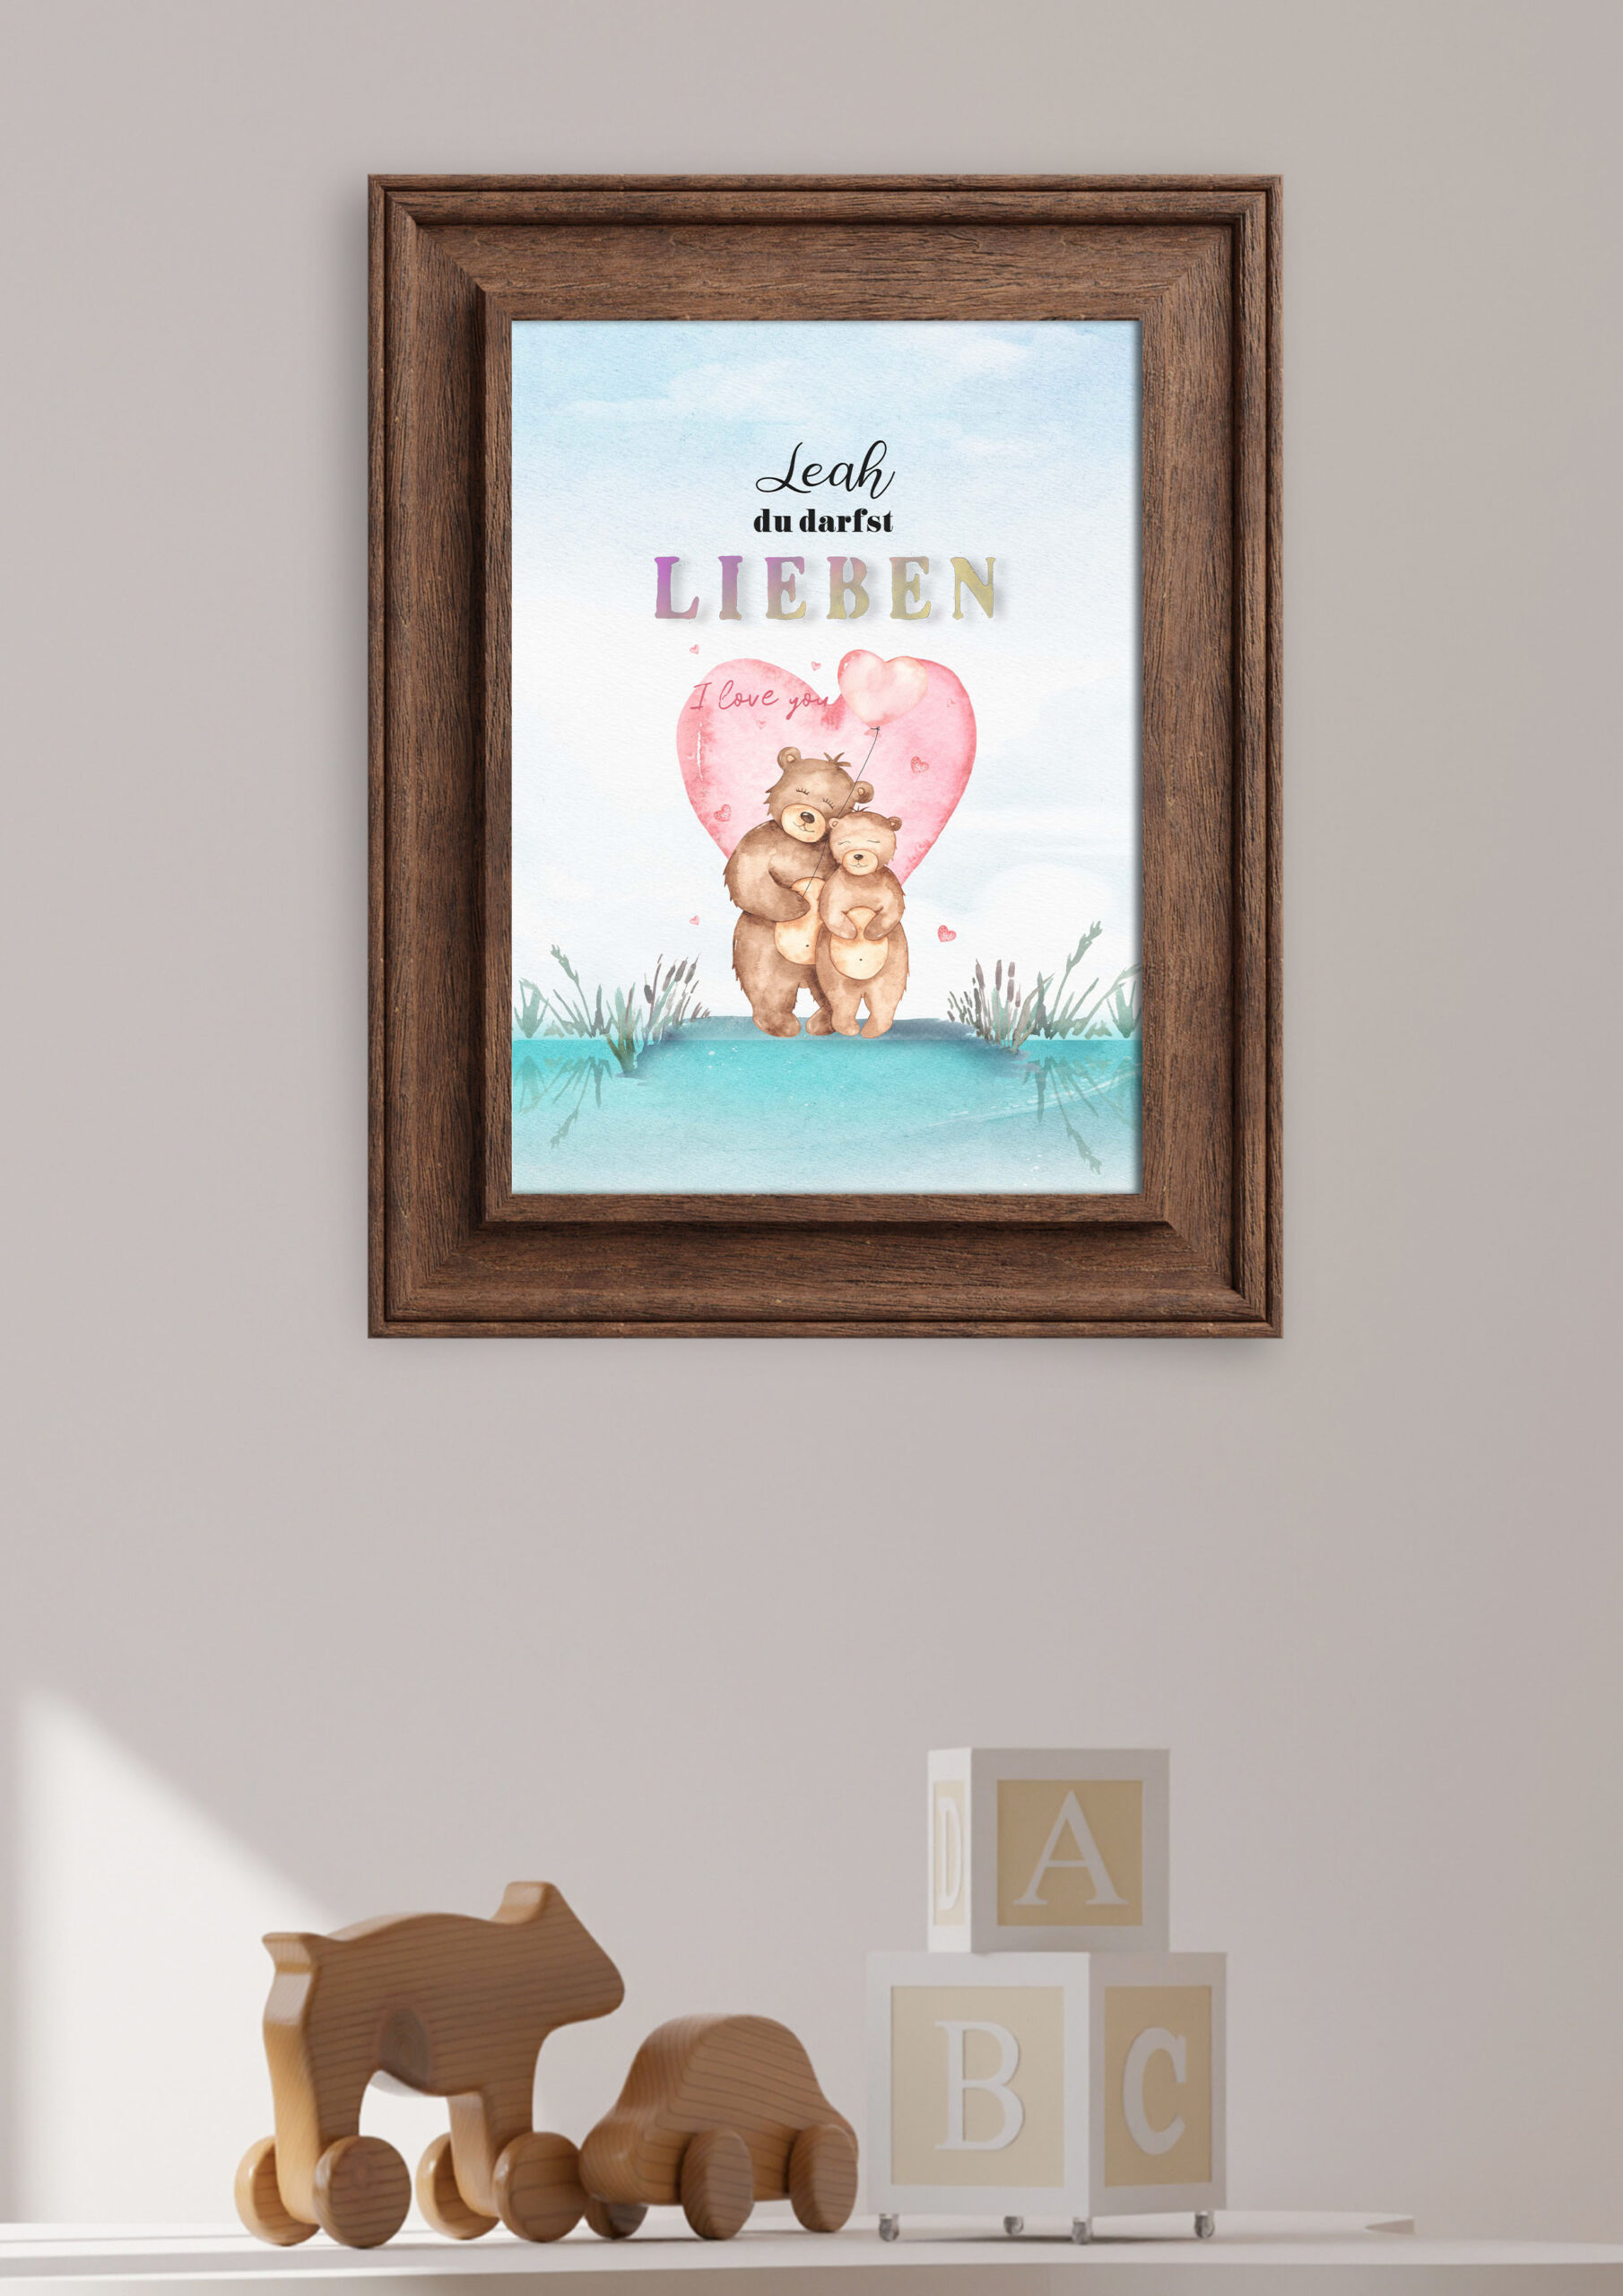 Aquarell, Poster, Chalkboard, Shop, All About Bina, Personalisierte Bilder, Leinwand, Alu-Dibond, Prints, Familie, Kinder, Geburtstag, Hochzeit, Geschenk